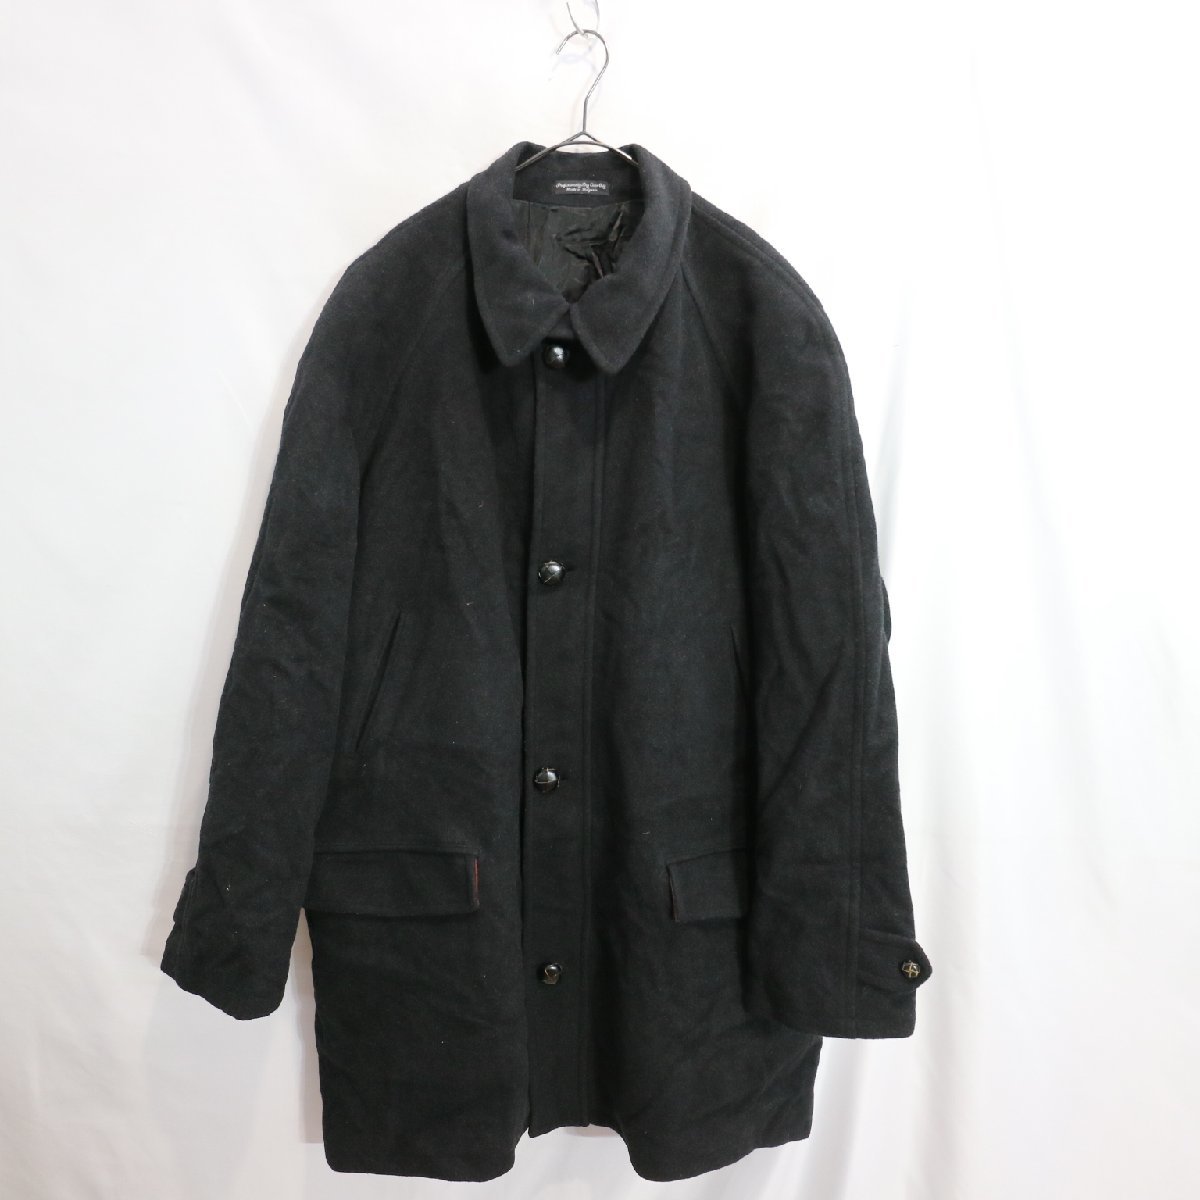 MILLENNIUM  шерсть   половина  пальто  ...  защита от холода   ...  черный  (  мужской  XL размер   соответствует   )  подержанный товар   бу одежда  M3700